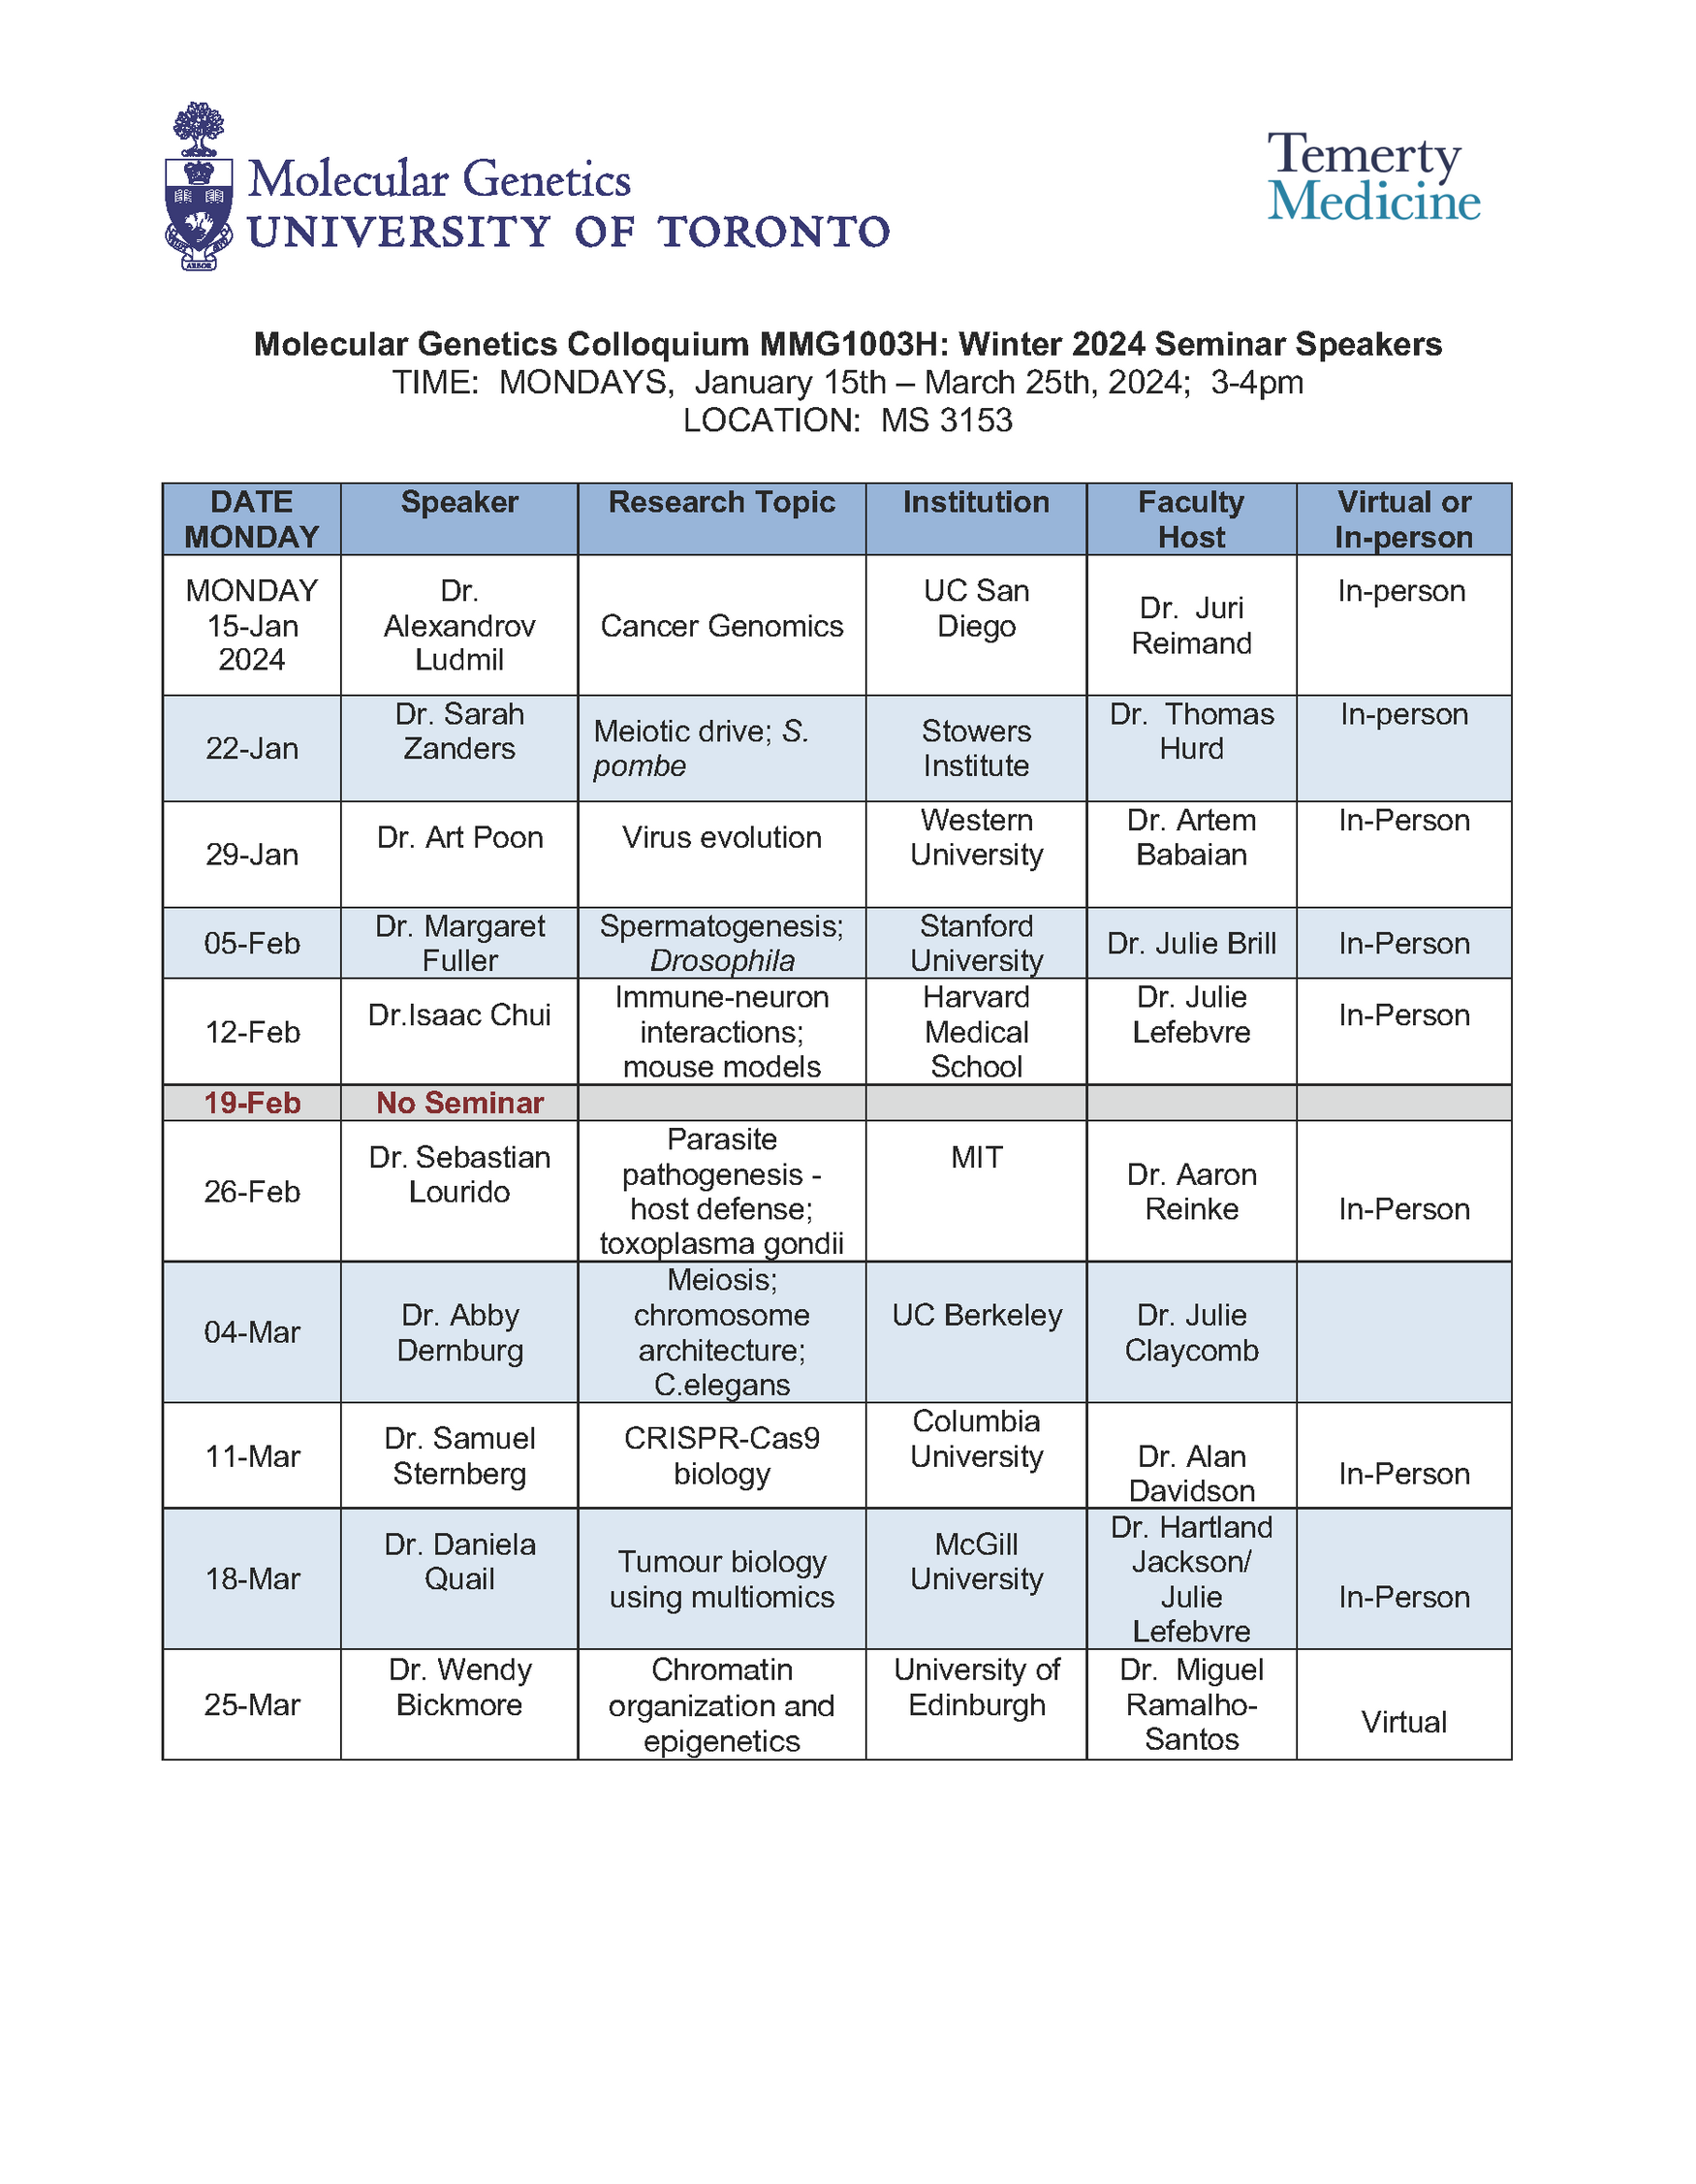 Schedule for Molecular Genetics Colloquium Seminar Speakers 2024